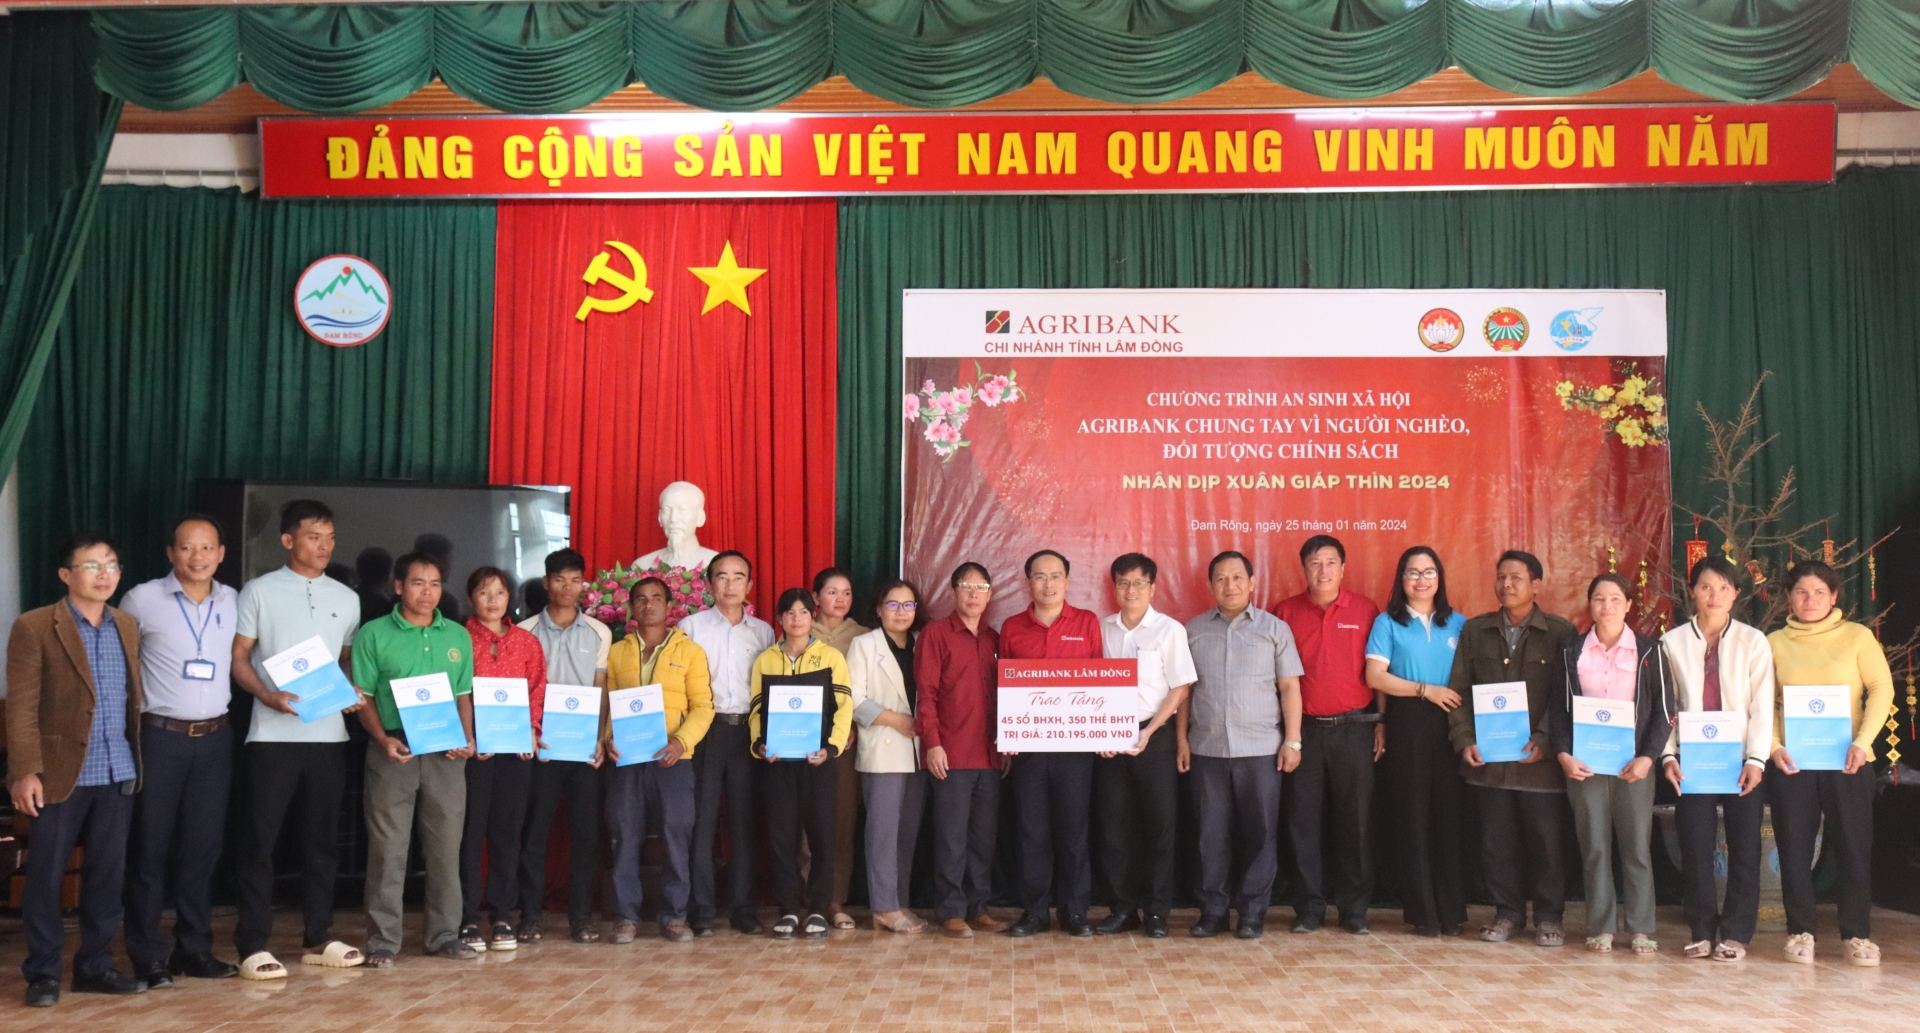 Agribank Lâm Đồng thực hiện chương trình an sinh xã hội nhân dịp Tết Giáp Thìn